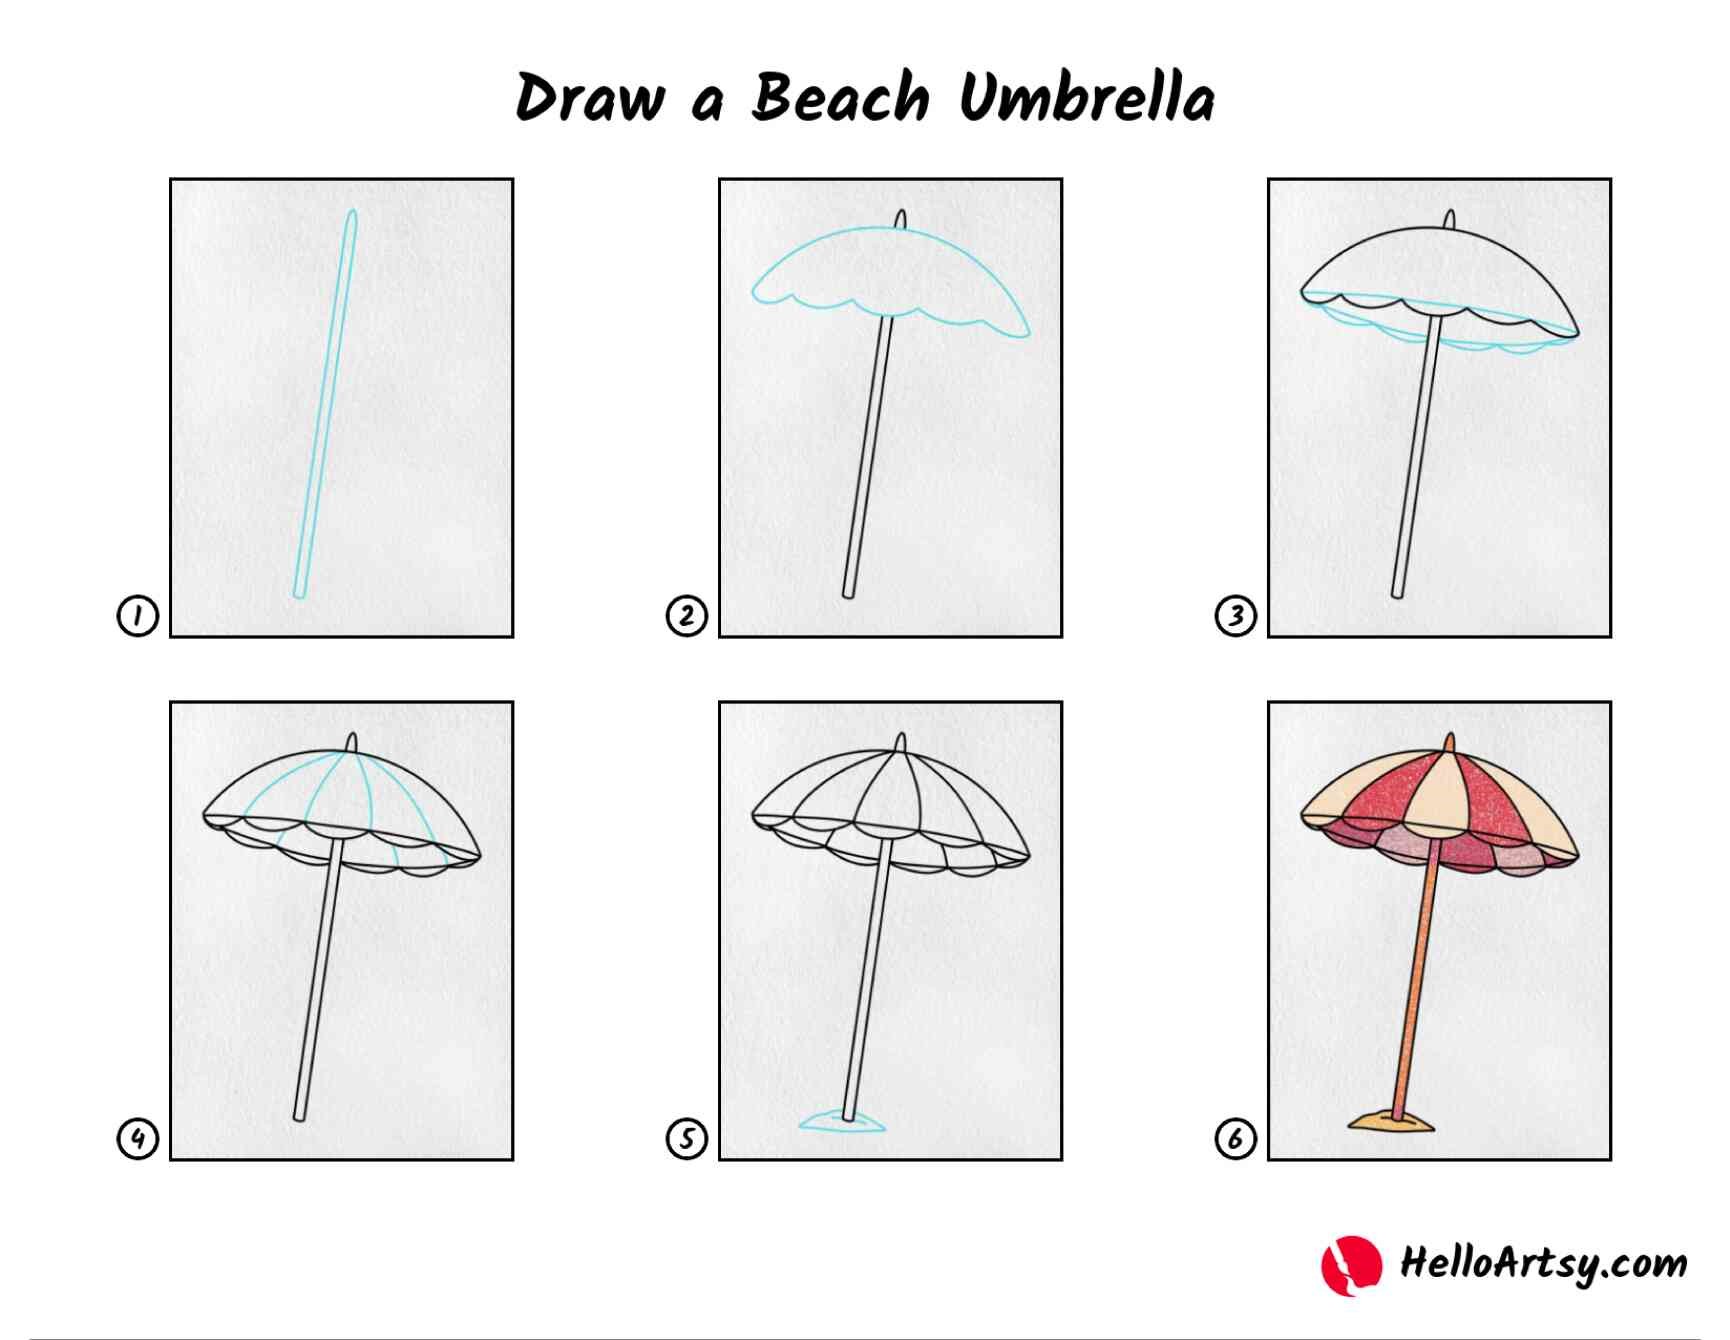 Regenschirm-Idee 8 dessin